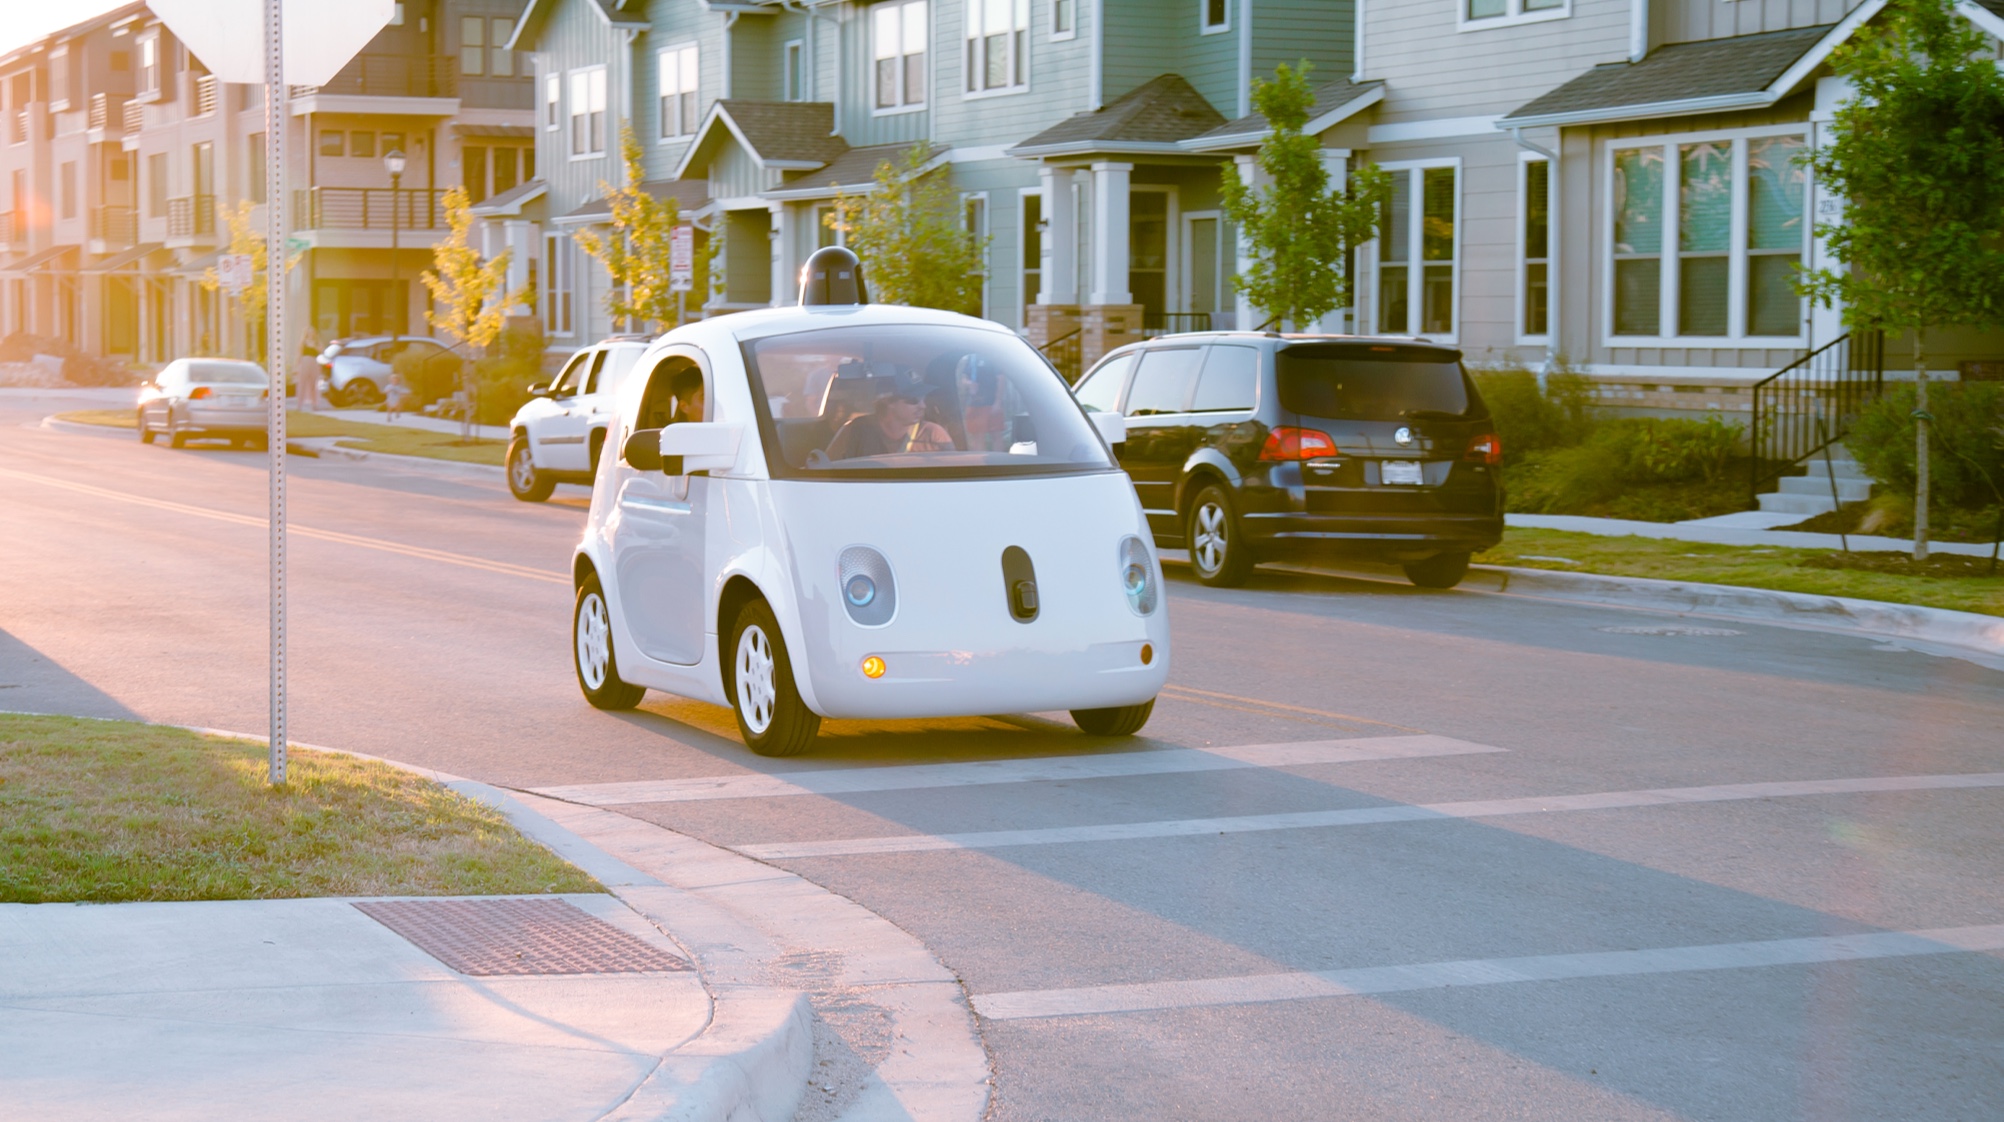 Google/Waymos selvkjørende biler vil snart ikke trenge ratt og sjåfør, som har vært kravet i California frem til nå.